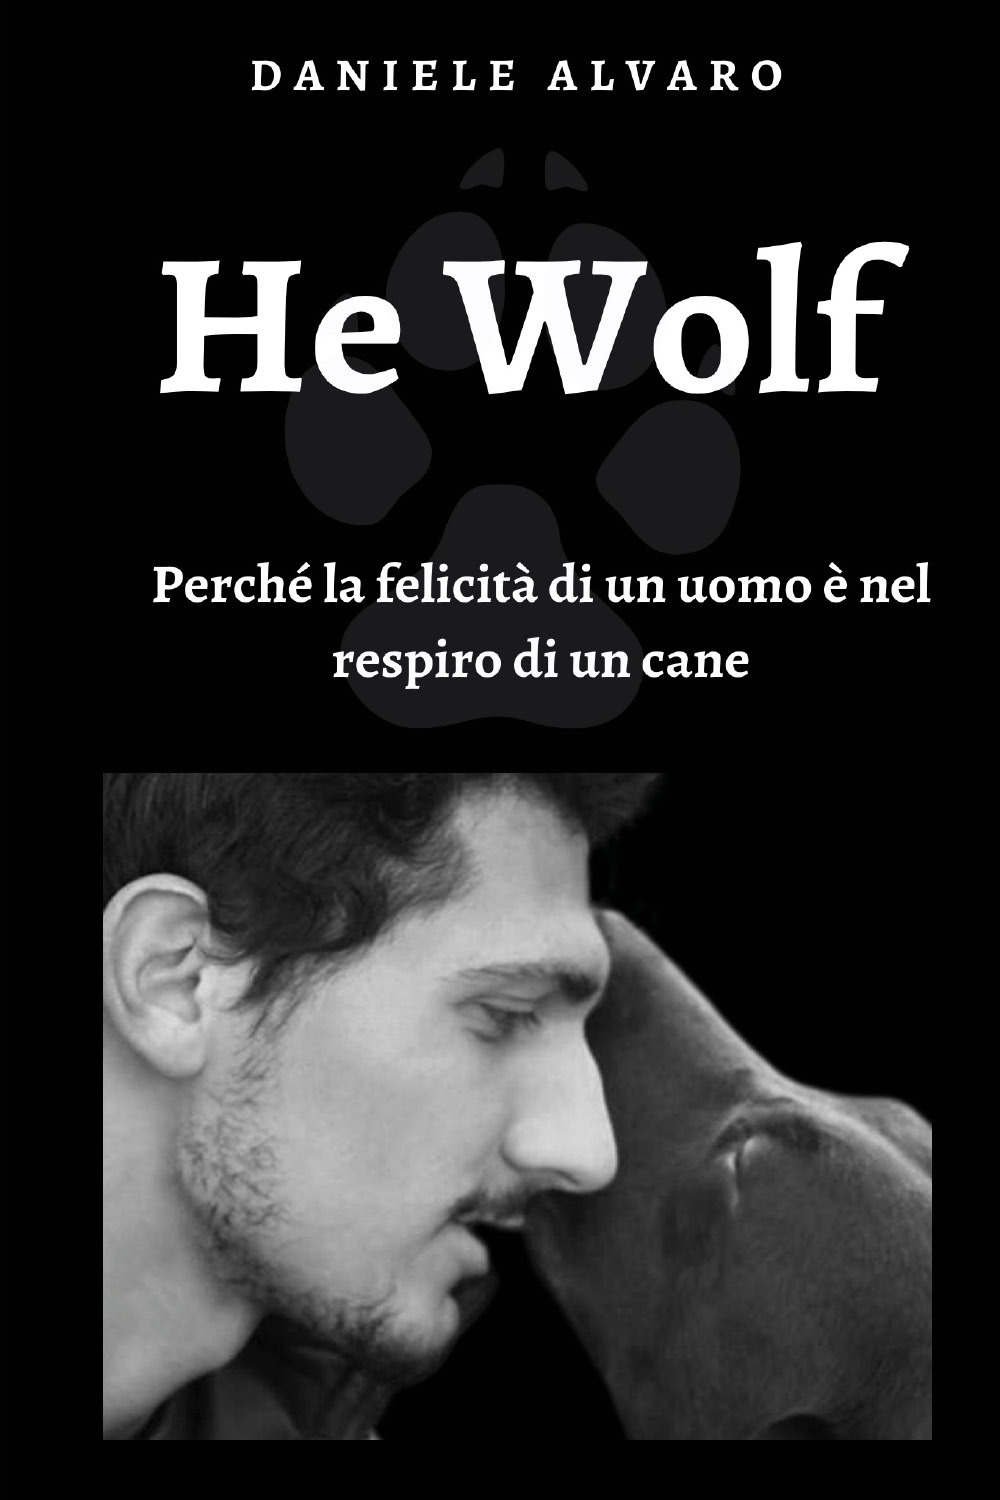 Libri Alvaro Daniele - He Wolf. Perche La Felicita Di Un Uomo E' Nel Respiro Di Un Cane NUOVO SIGILLATO, EDIZIONE DEL 06/05/2020 SUBITO DISPONIBILE